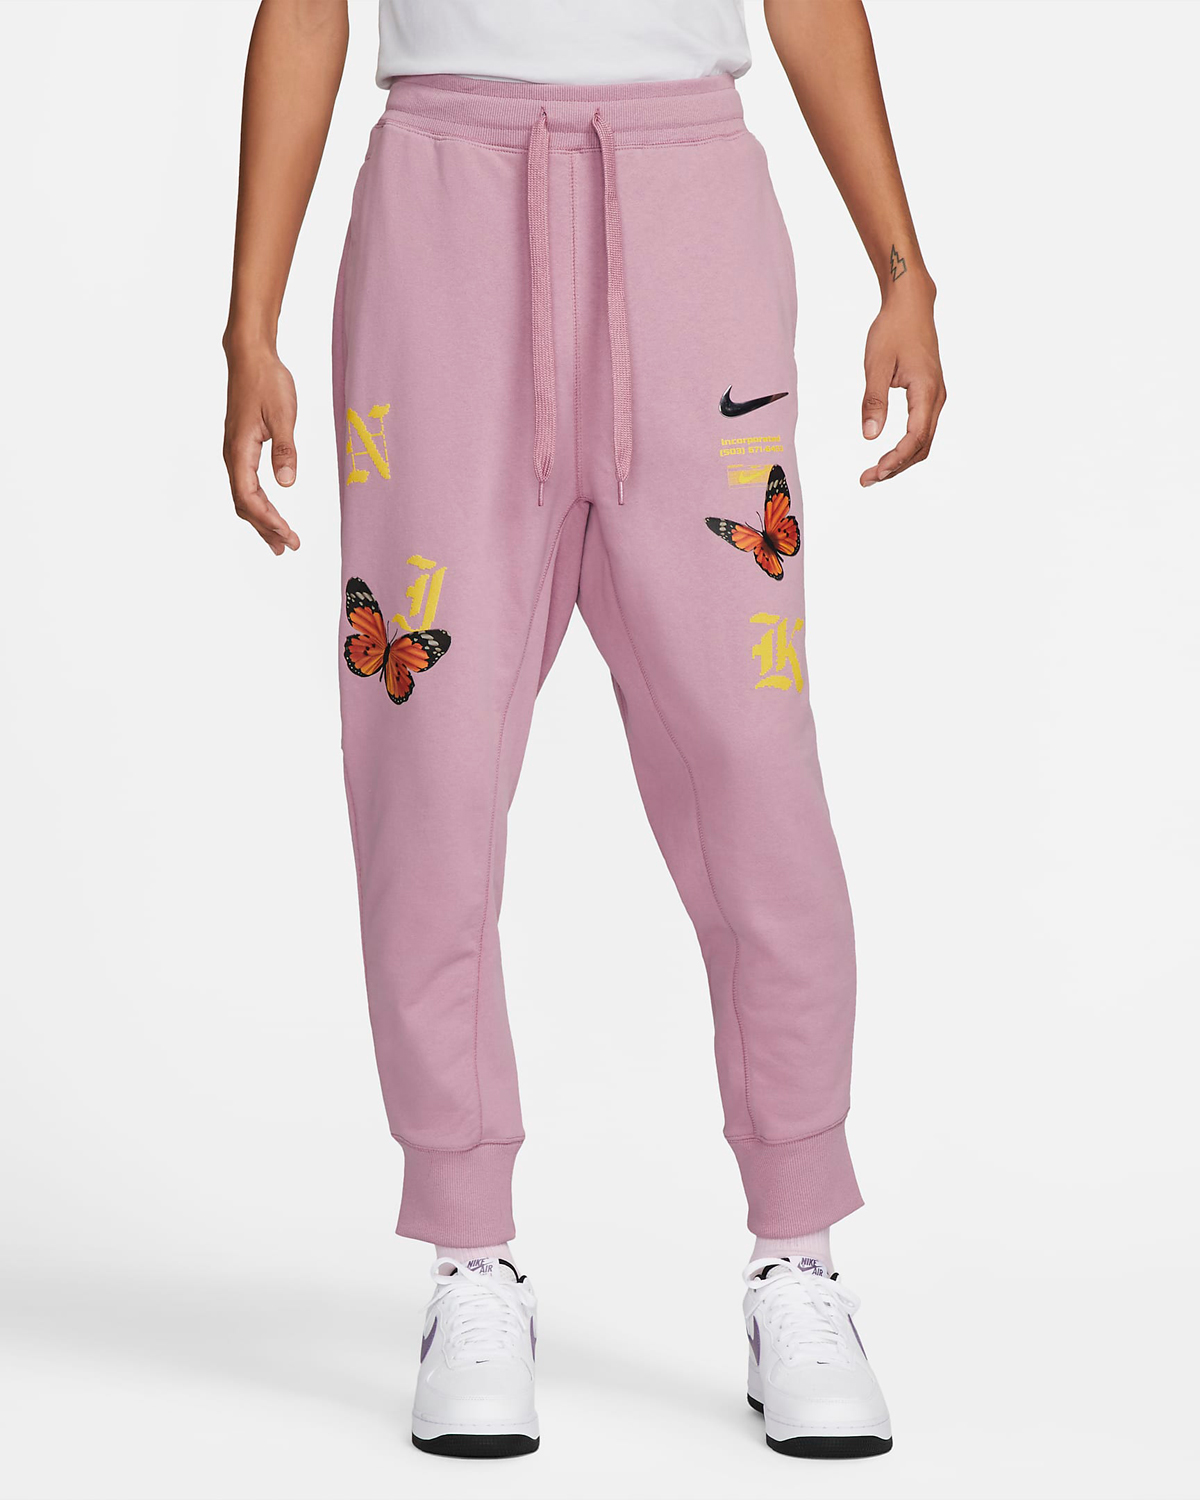 Nike-Sportswear-Butterfly-Pants-Orchid-Pink-1